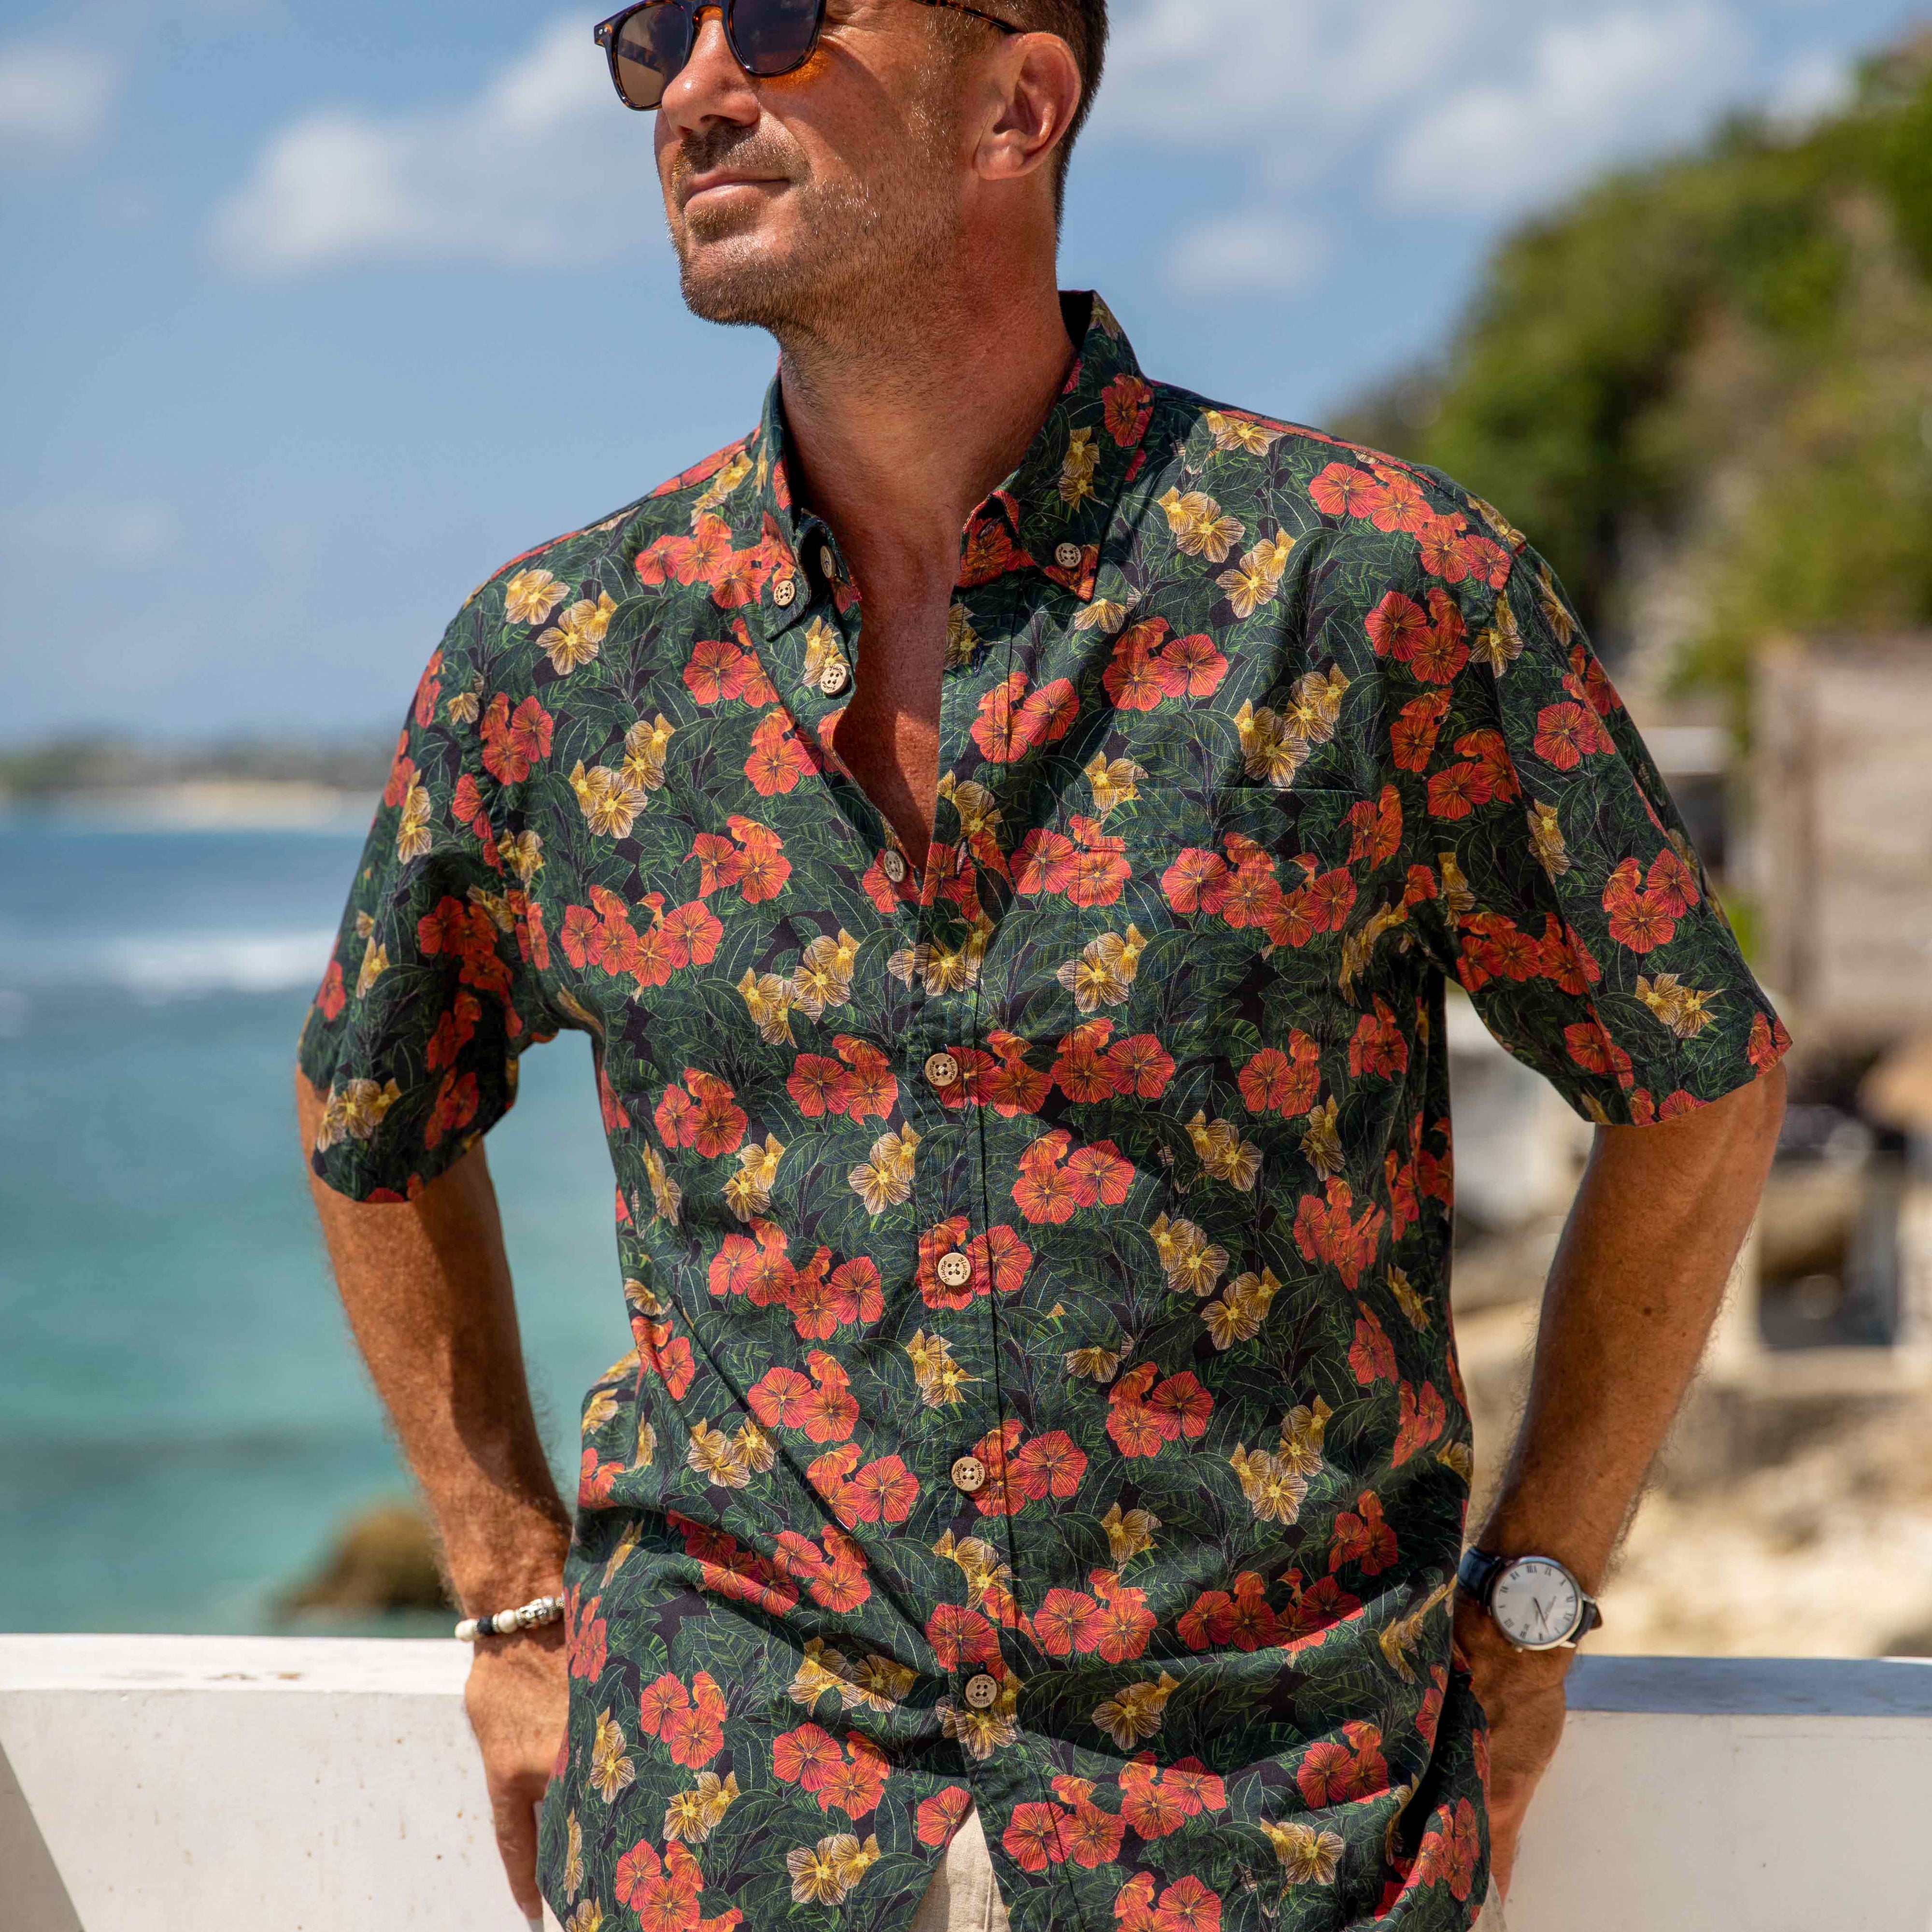 Valentinstag Herren Hawaiihemd Serenity in Bloom Print von Mahhima Bansal Baumwolle Button-down Kurzarm Aloha Hemd